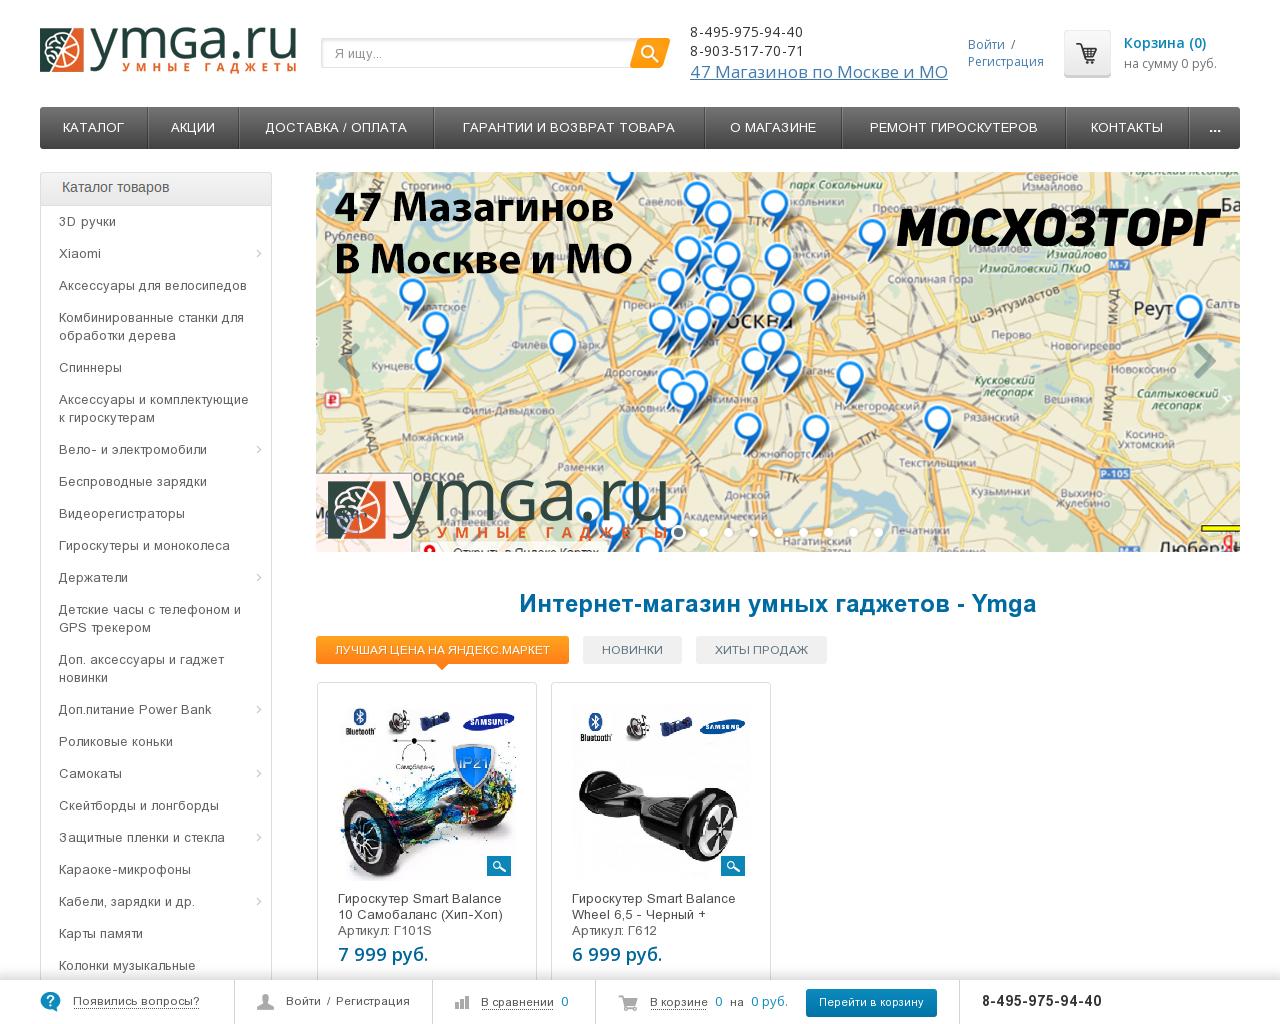 Изображение сайта ymga.ru в разрешении 1280x1024